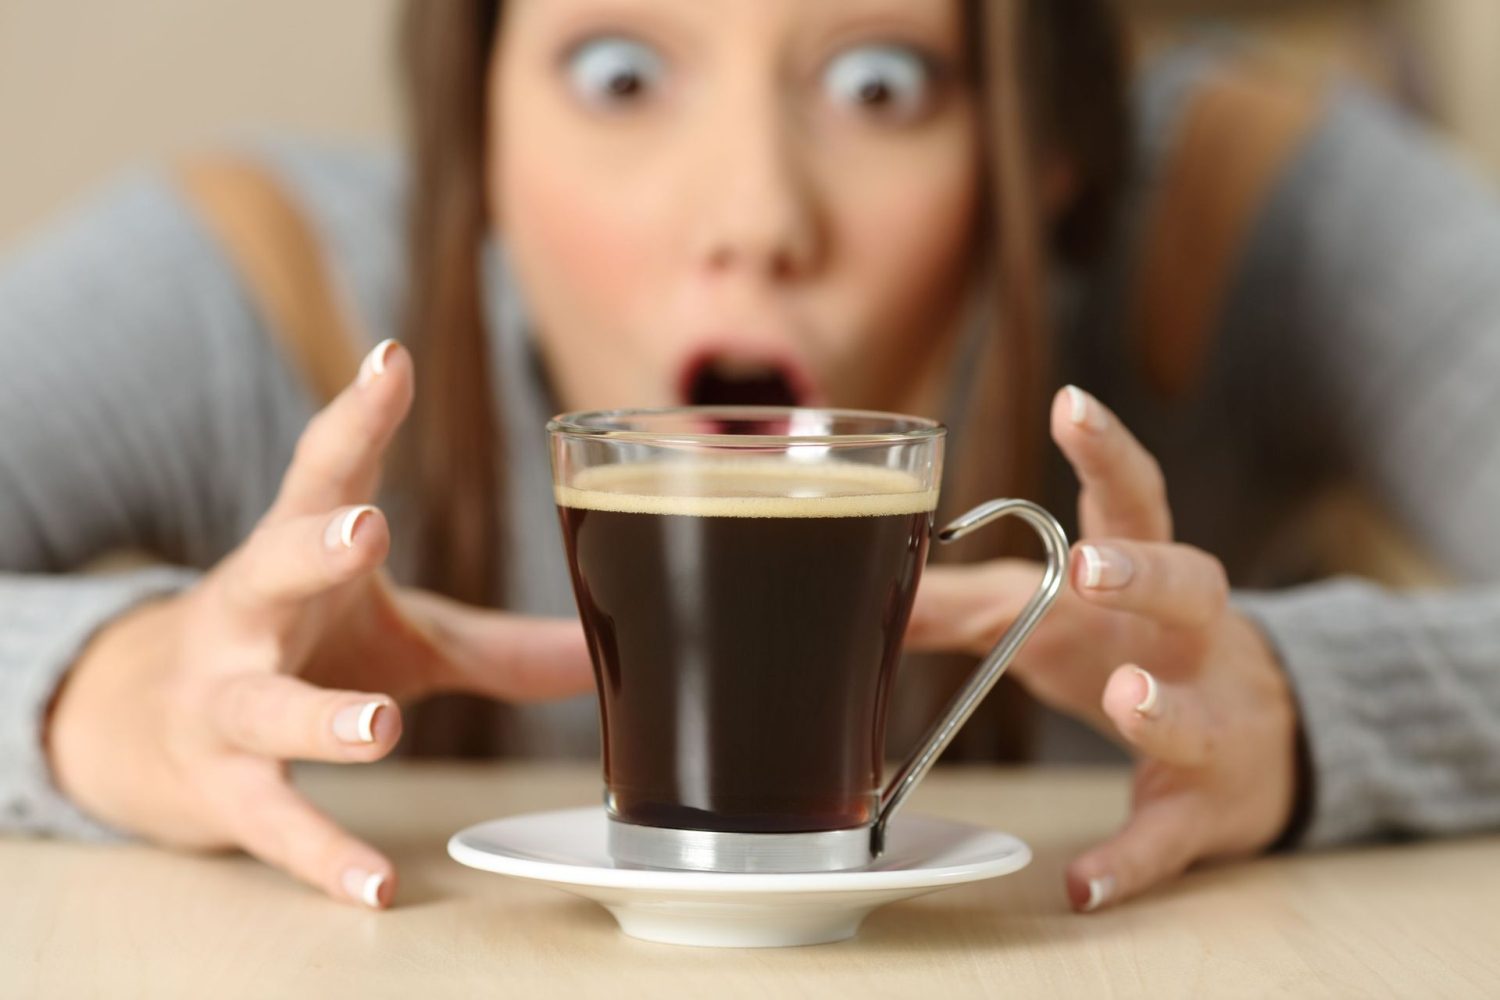 Limite el consumo de productos que contienen cafeína